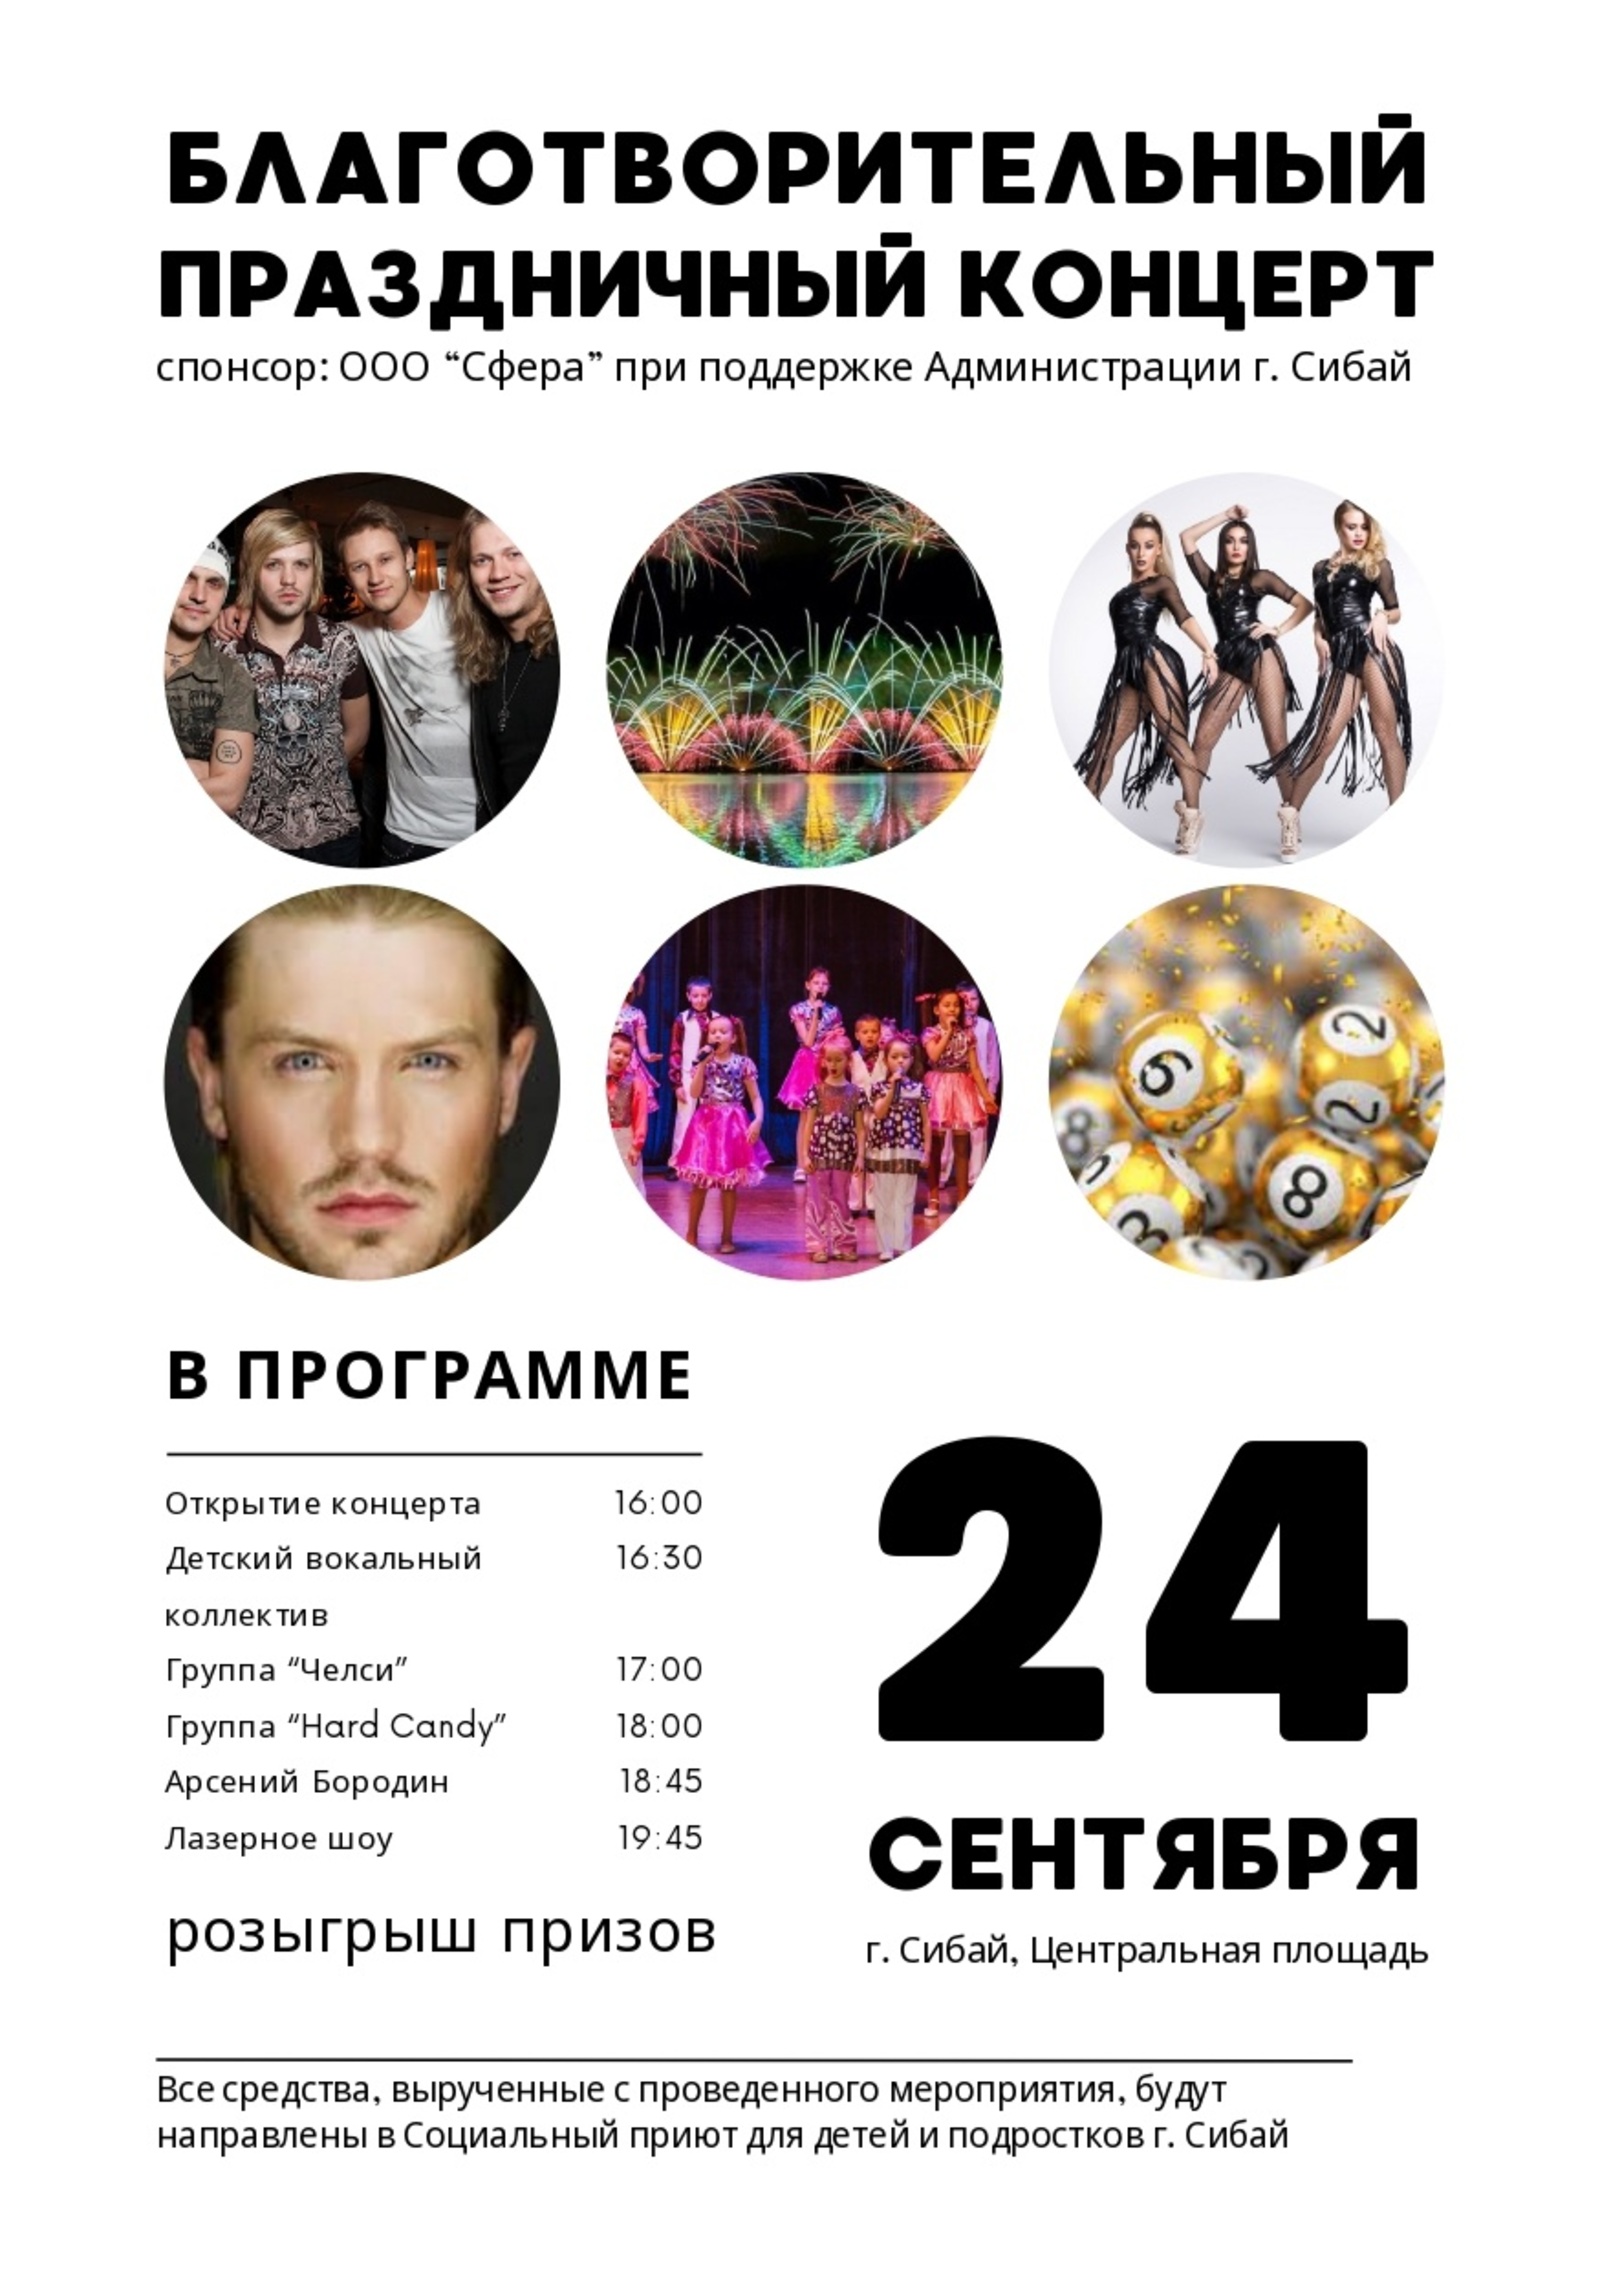 В Сибае состоится благотворительный праздничный концерт с участием московских звезд